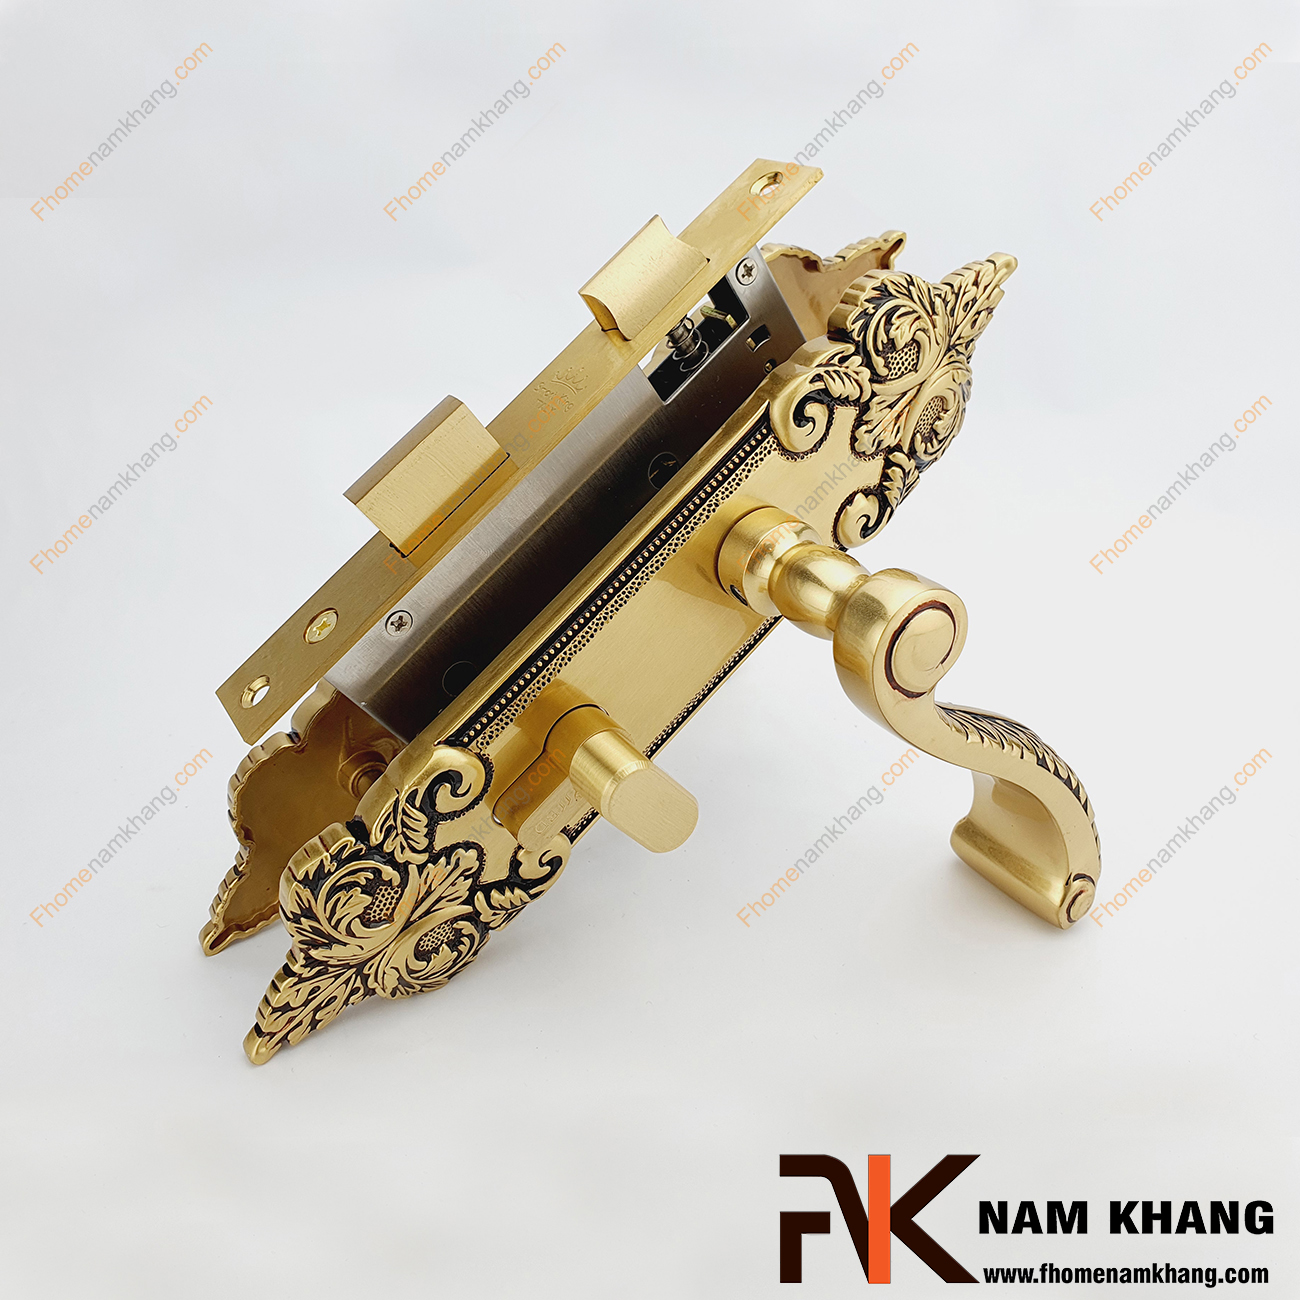 Khóa cửa thông phòng cổ điển màu đồng viền đen NK342M-OR, một dạng mẫu khóa cửa đồng cao cấp theo thiết kế cổ điển với đồng vàng mạ lớp màu phối đen tạo điểm nhấn cho sản phẩm chất lượng.